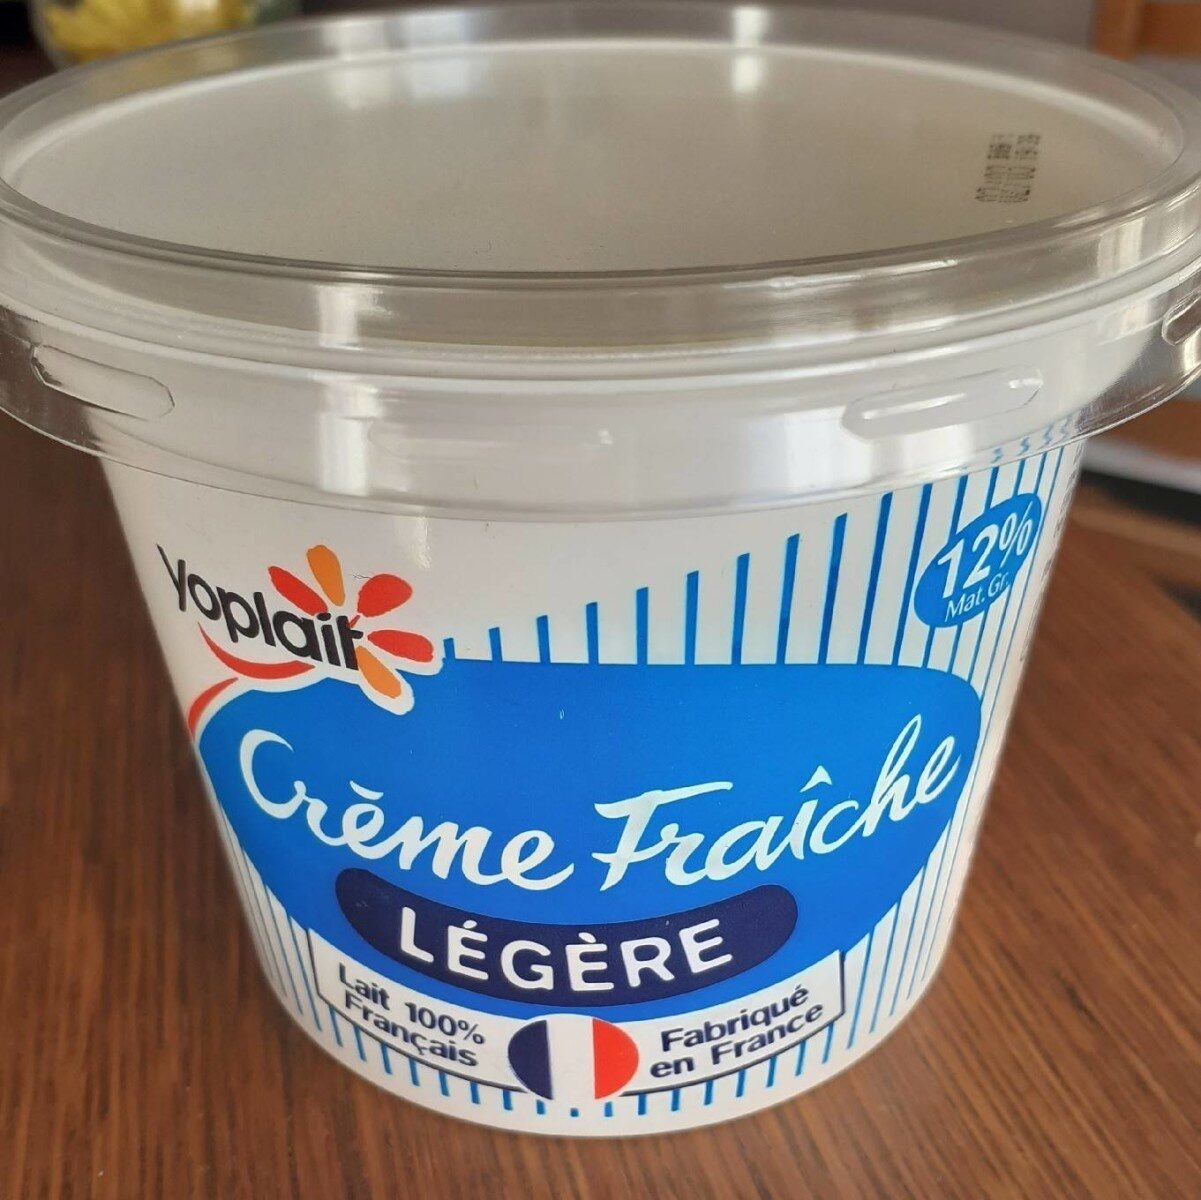 Crème fraîche légère. - Produkt - fr